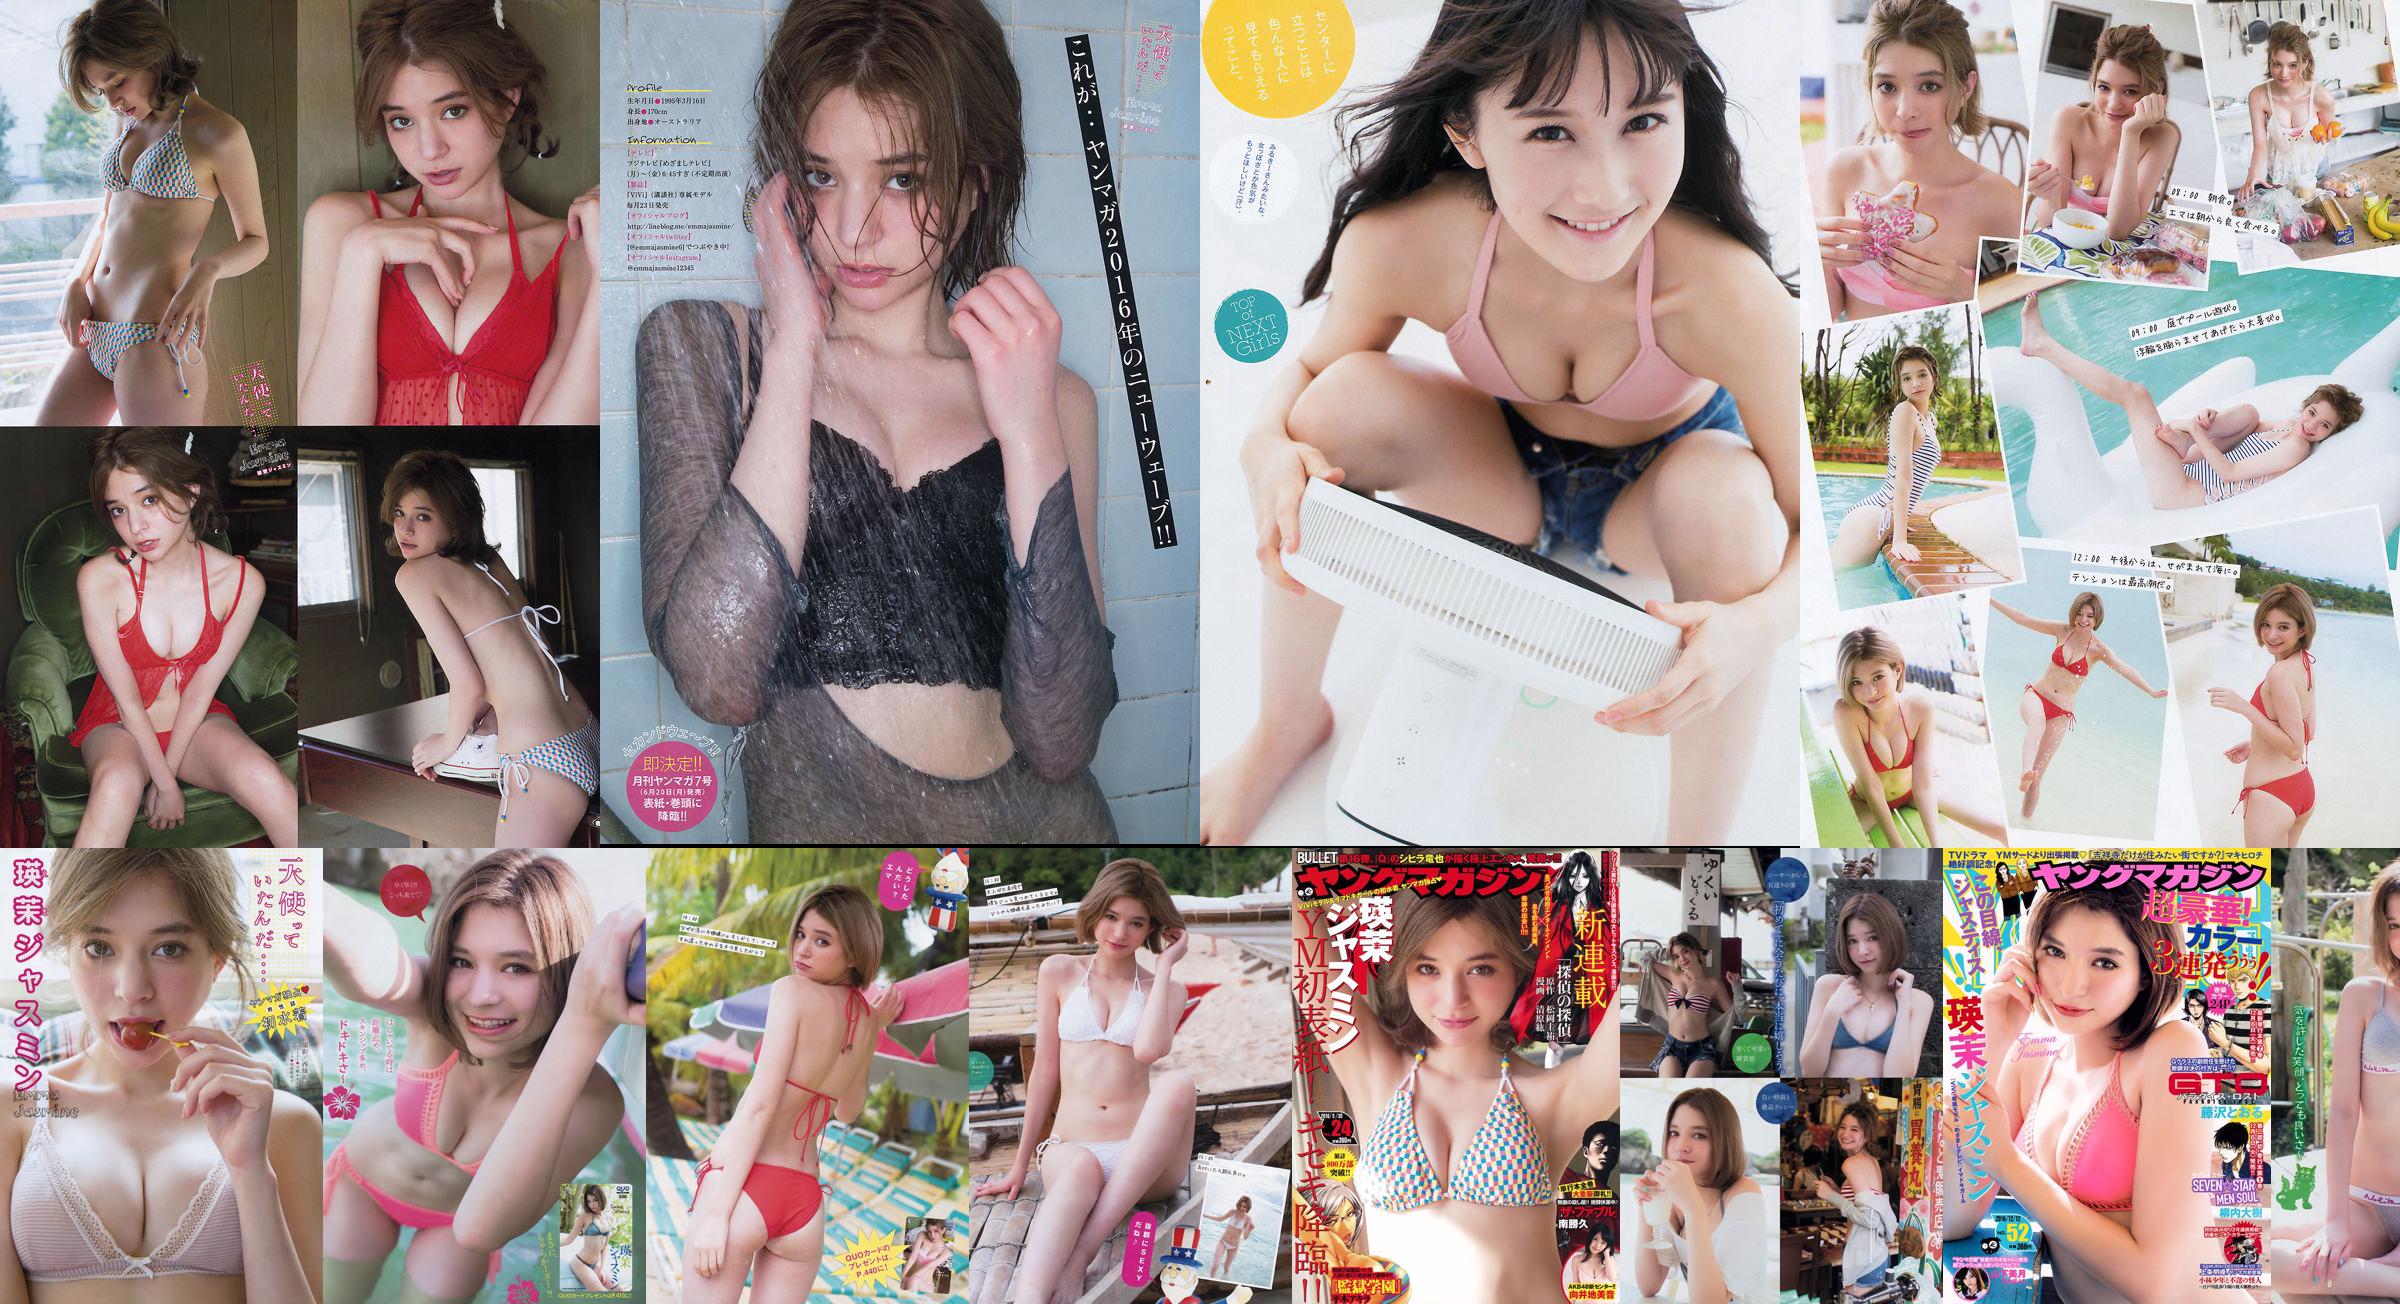 [Młody magazyn] Emma Jasmine Mizuki Yamashita 2016 nr 52 Zdjęcie No.601163 Strona 1